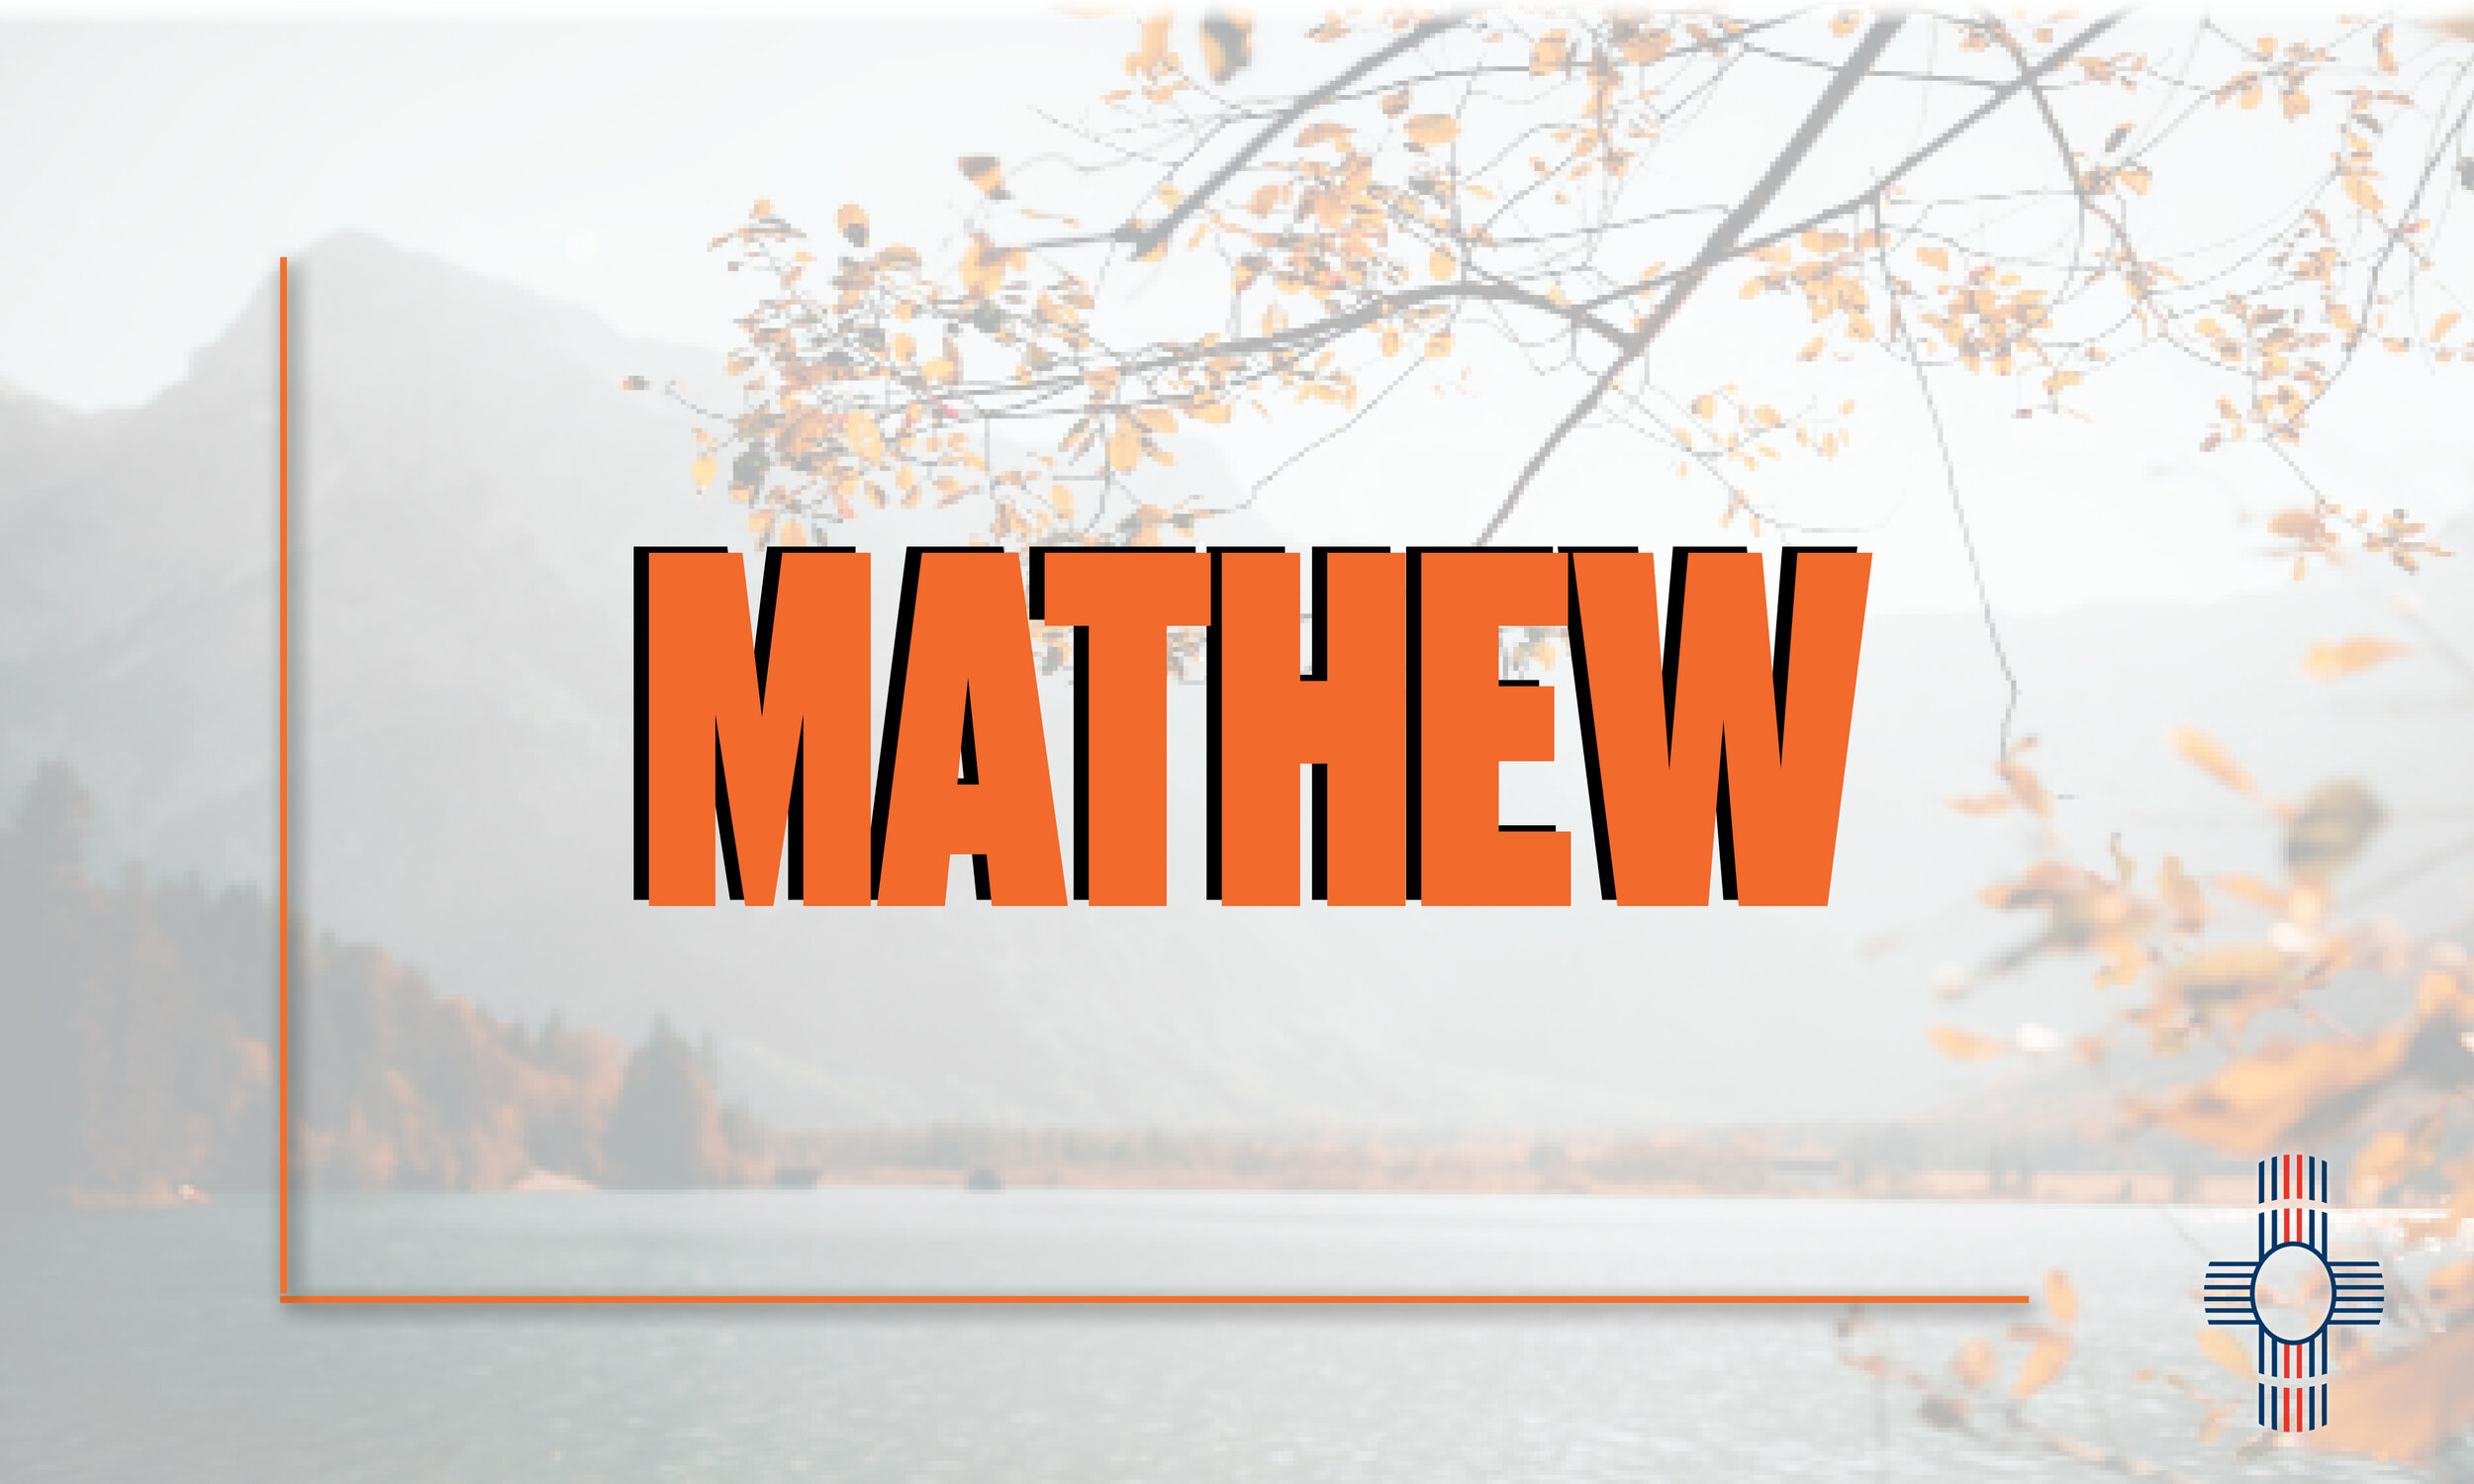 Gospel of Mathew